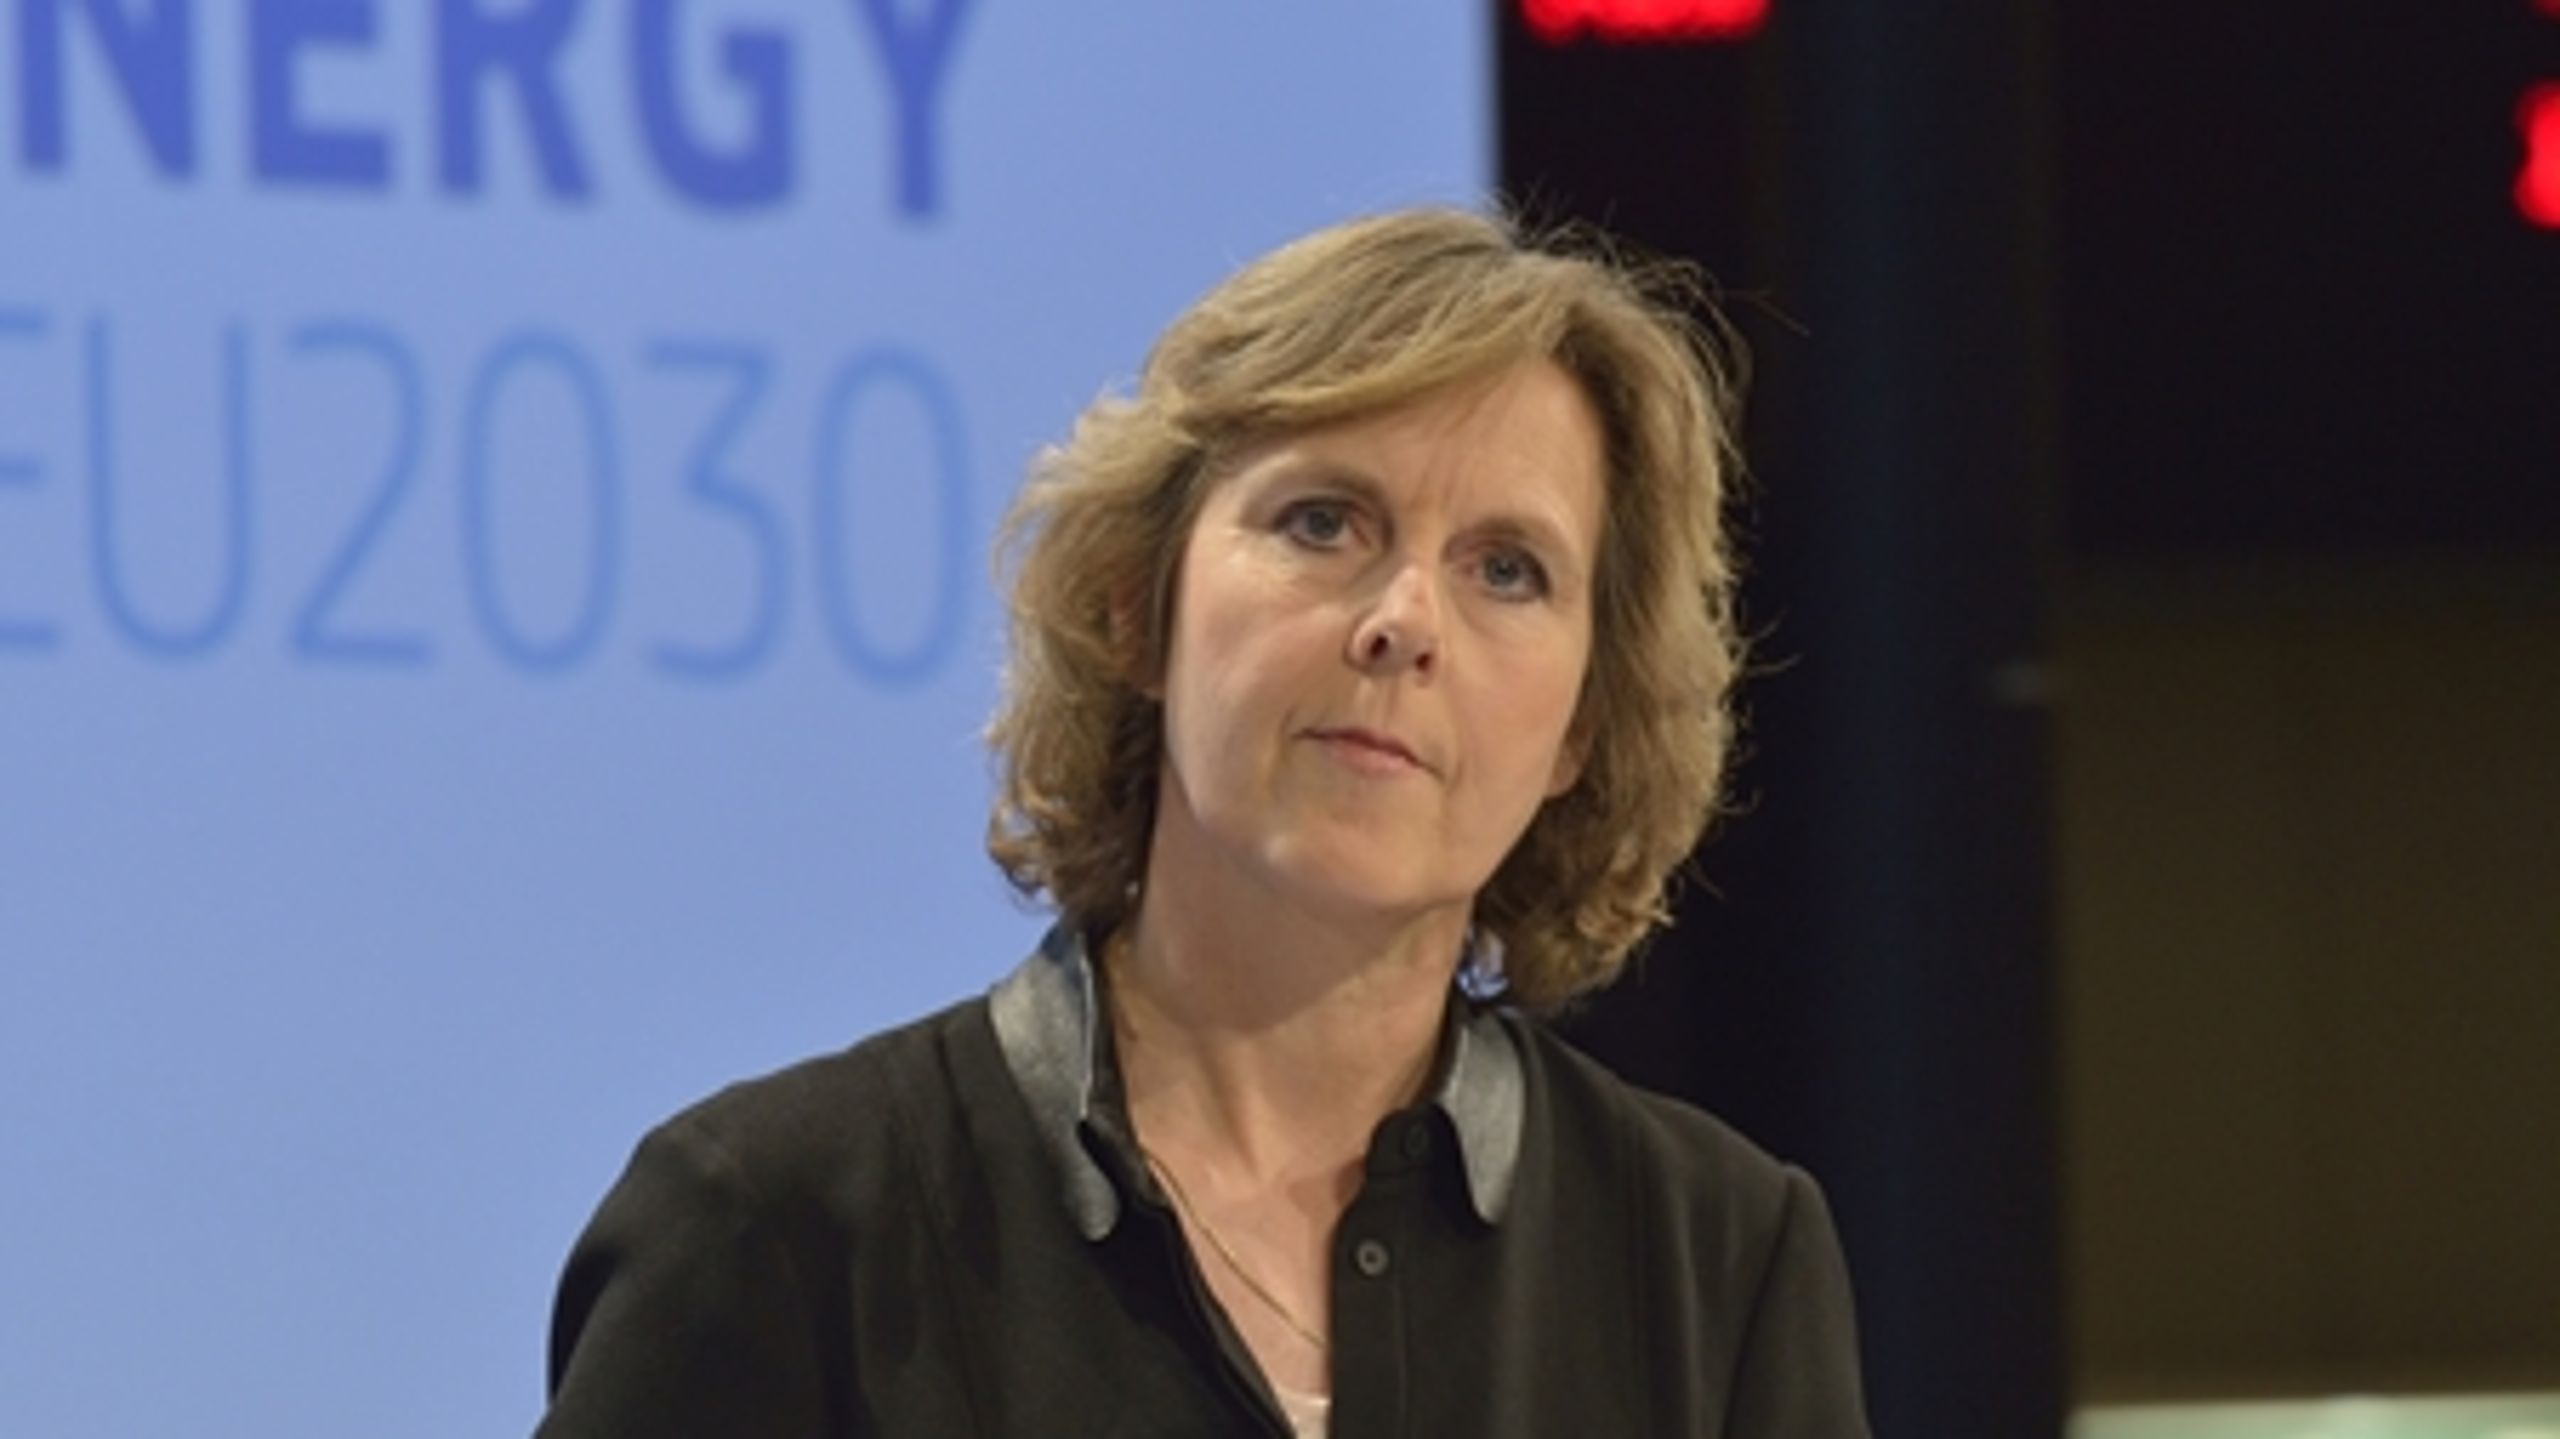 Selvom processen er på skinner, er der brug for, at alle tilhængere af en ambitiøs 2030-pakke kæmper for, at vi kommer i mål, skriver Connie Hedegaard.